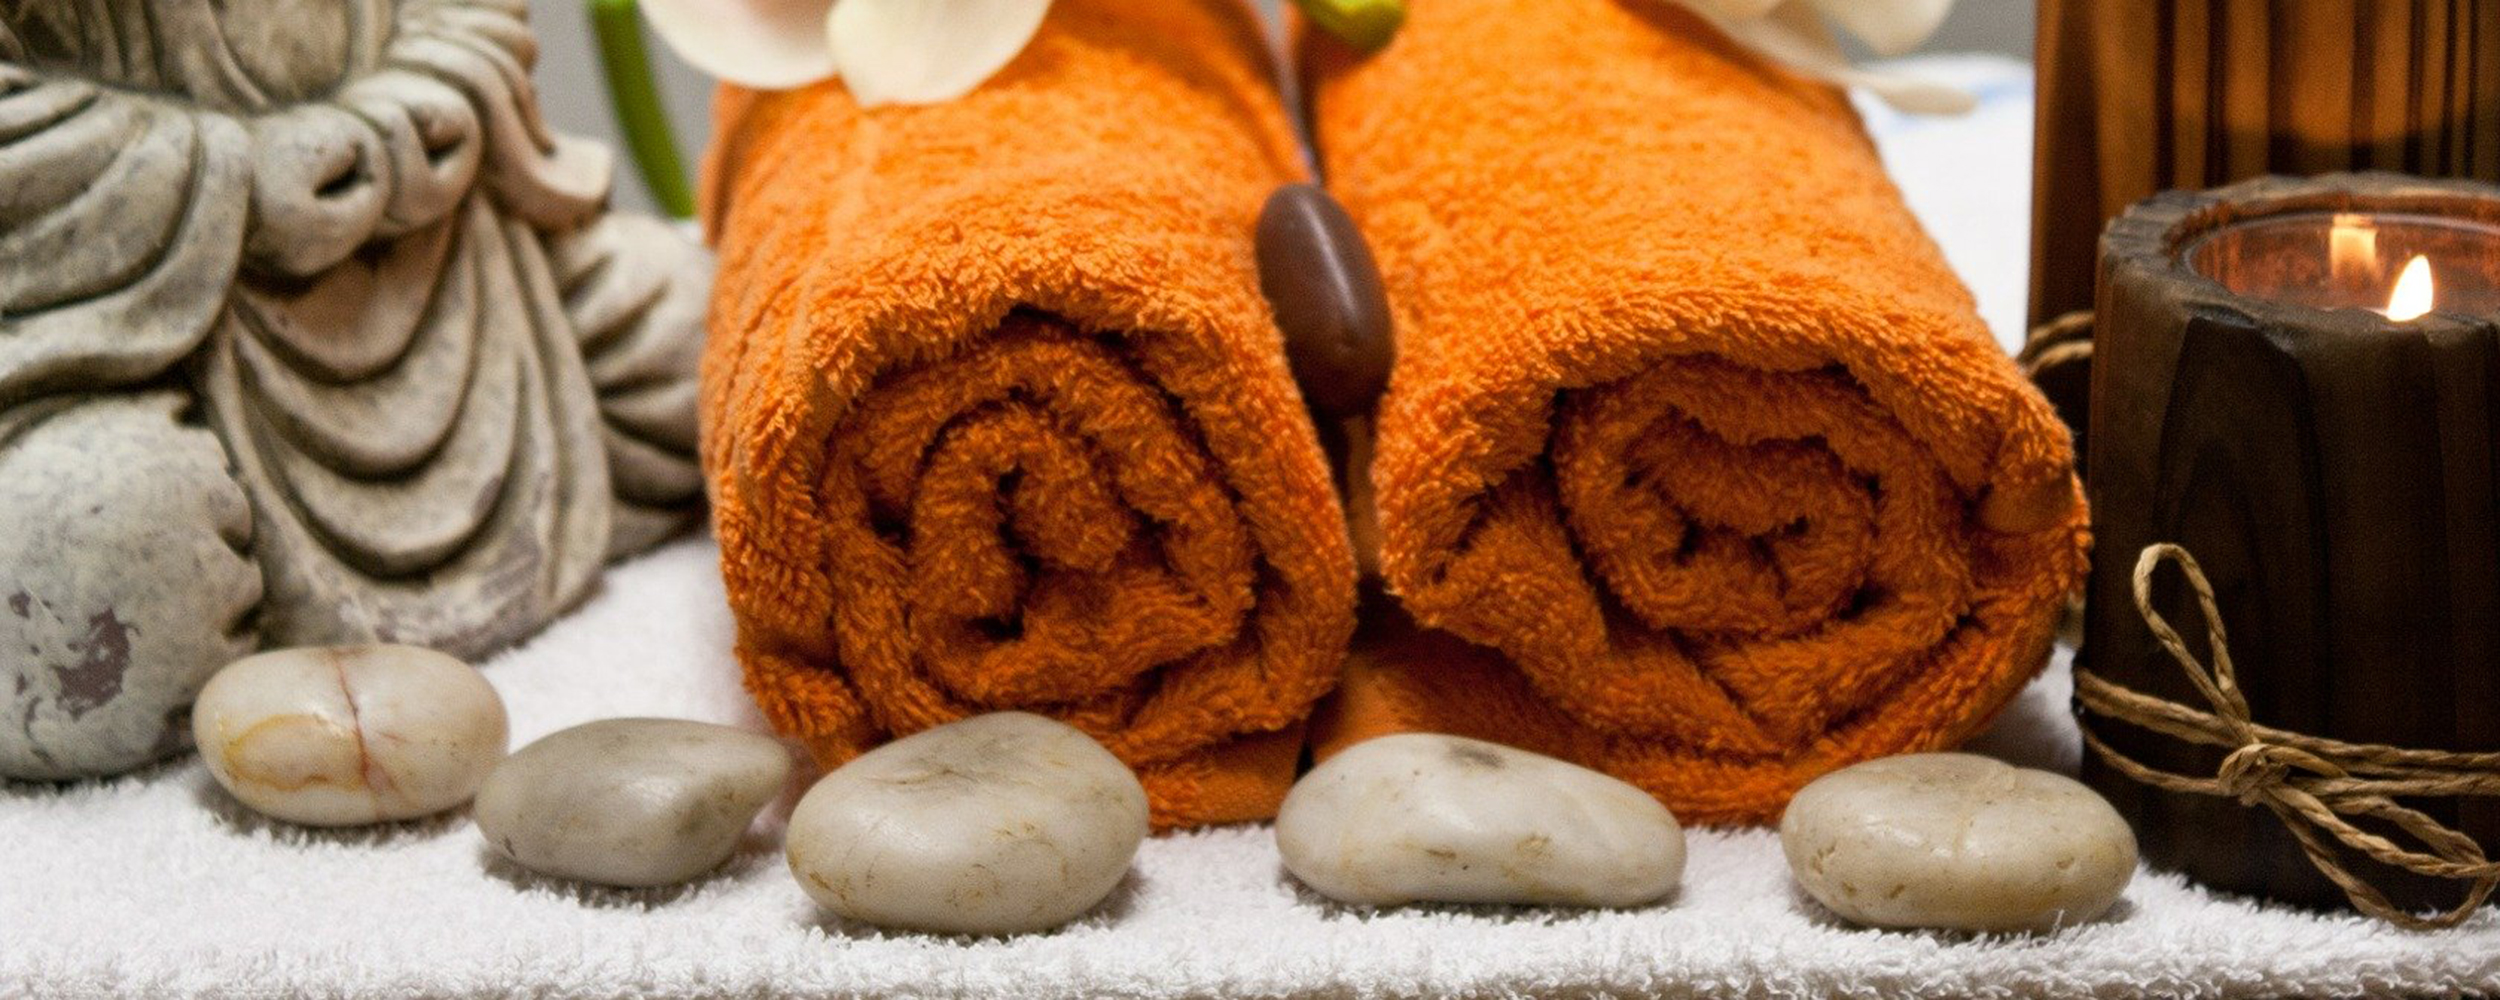 Max massage. Войлочные изделия для бани и сауны. Обои. Ароматические масла для бани и сауны.